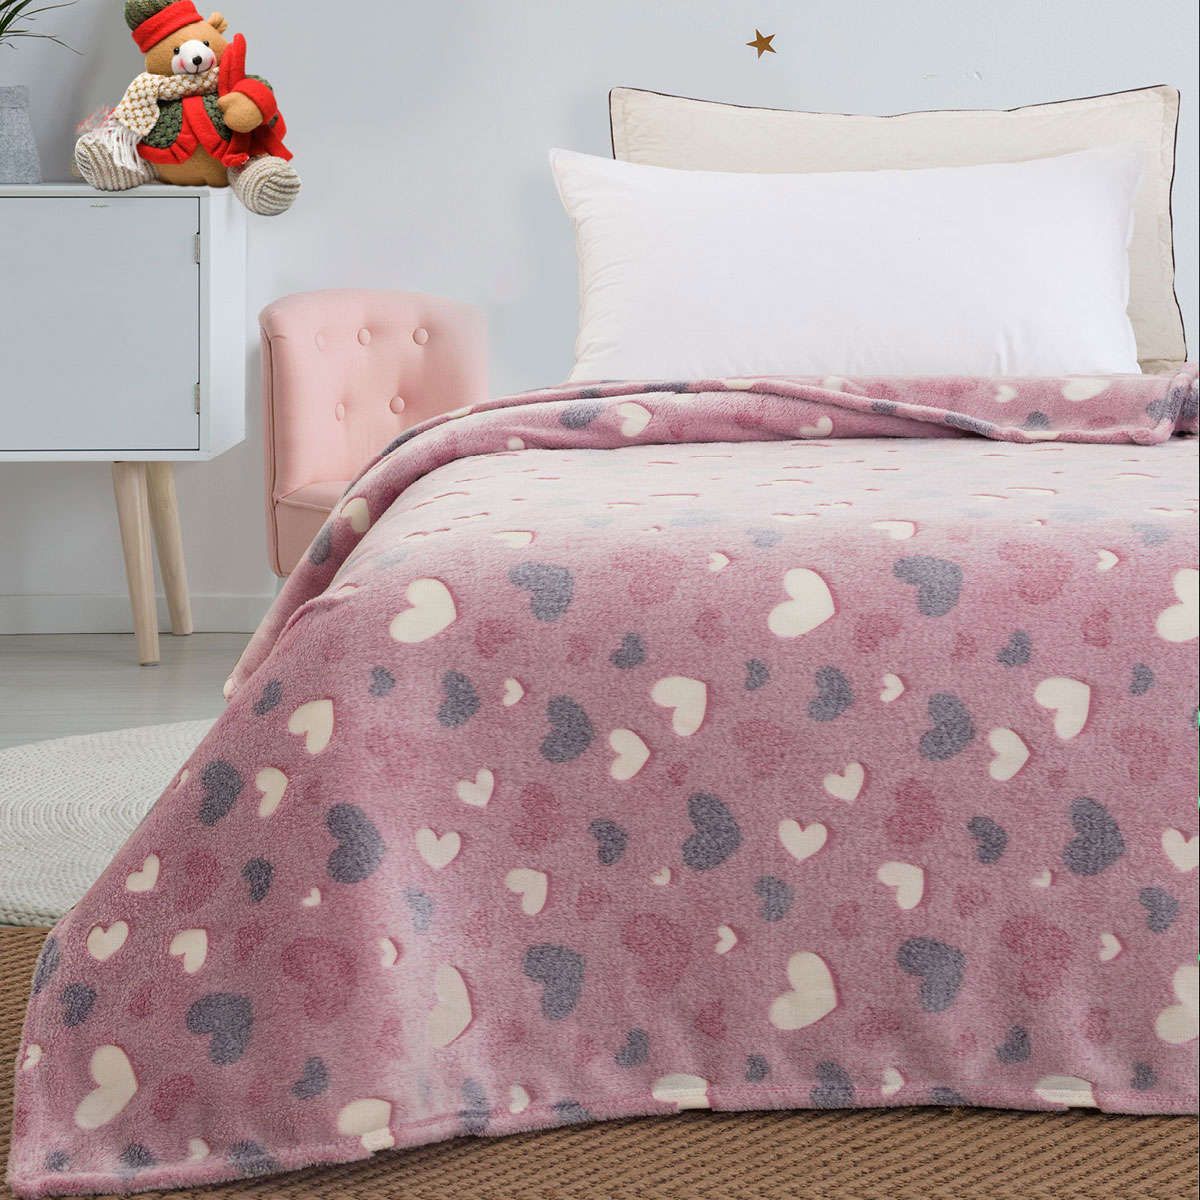 Παιδική κουβέρτα μονή φωσφορίζουσα Flash Art 6137 pink beauty home